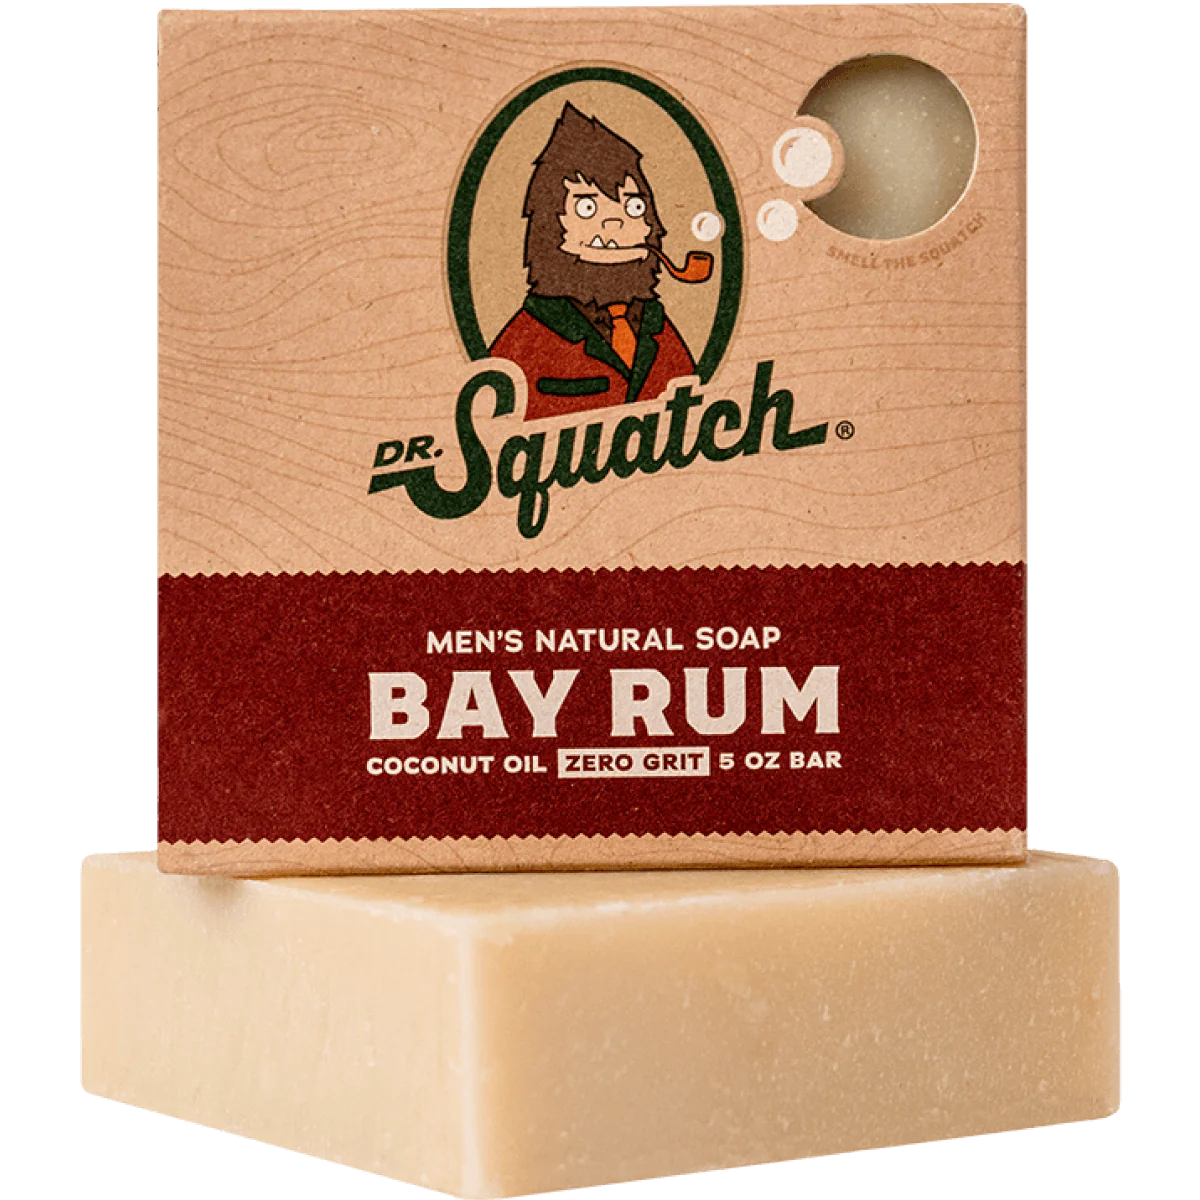 Men's Natural Soap - Bay Rum